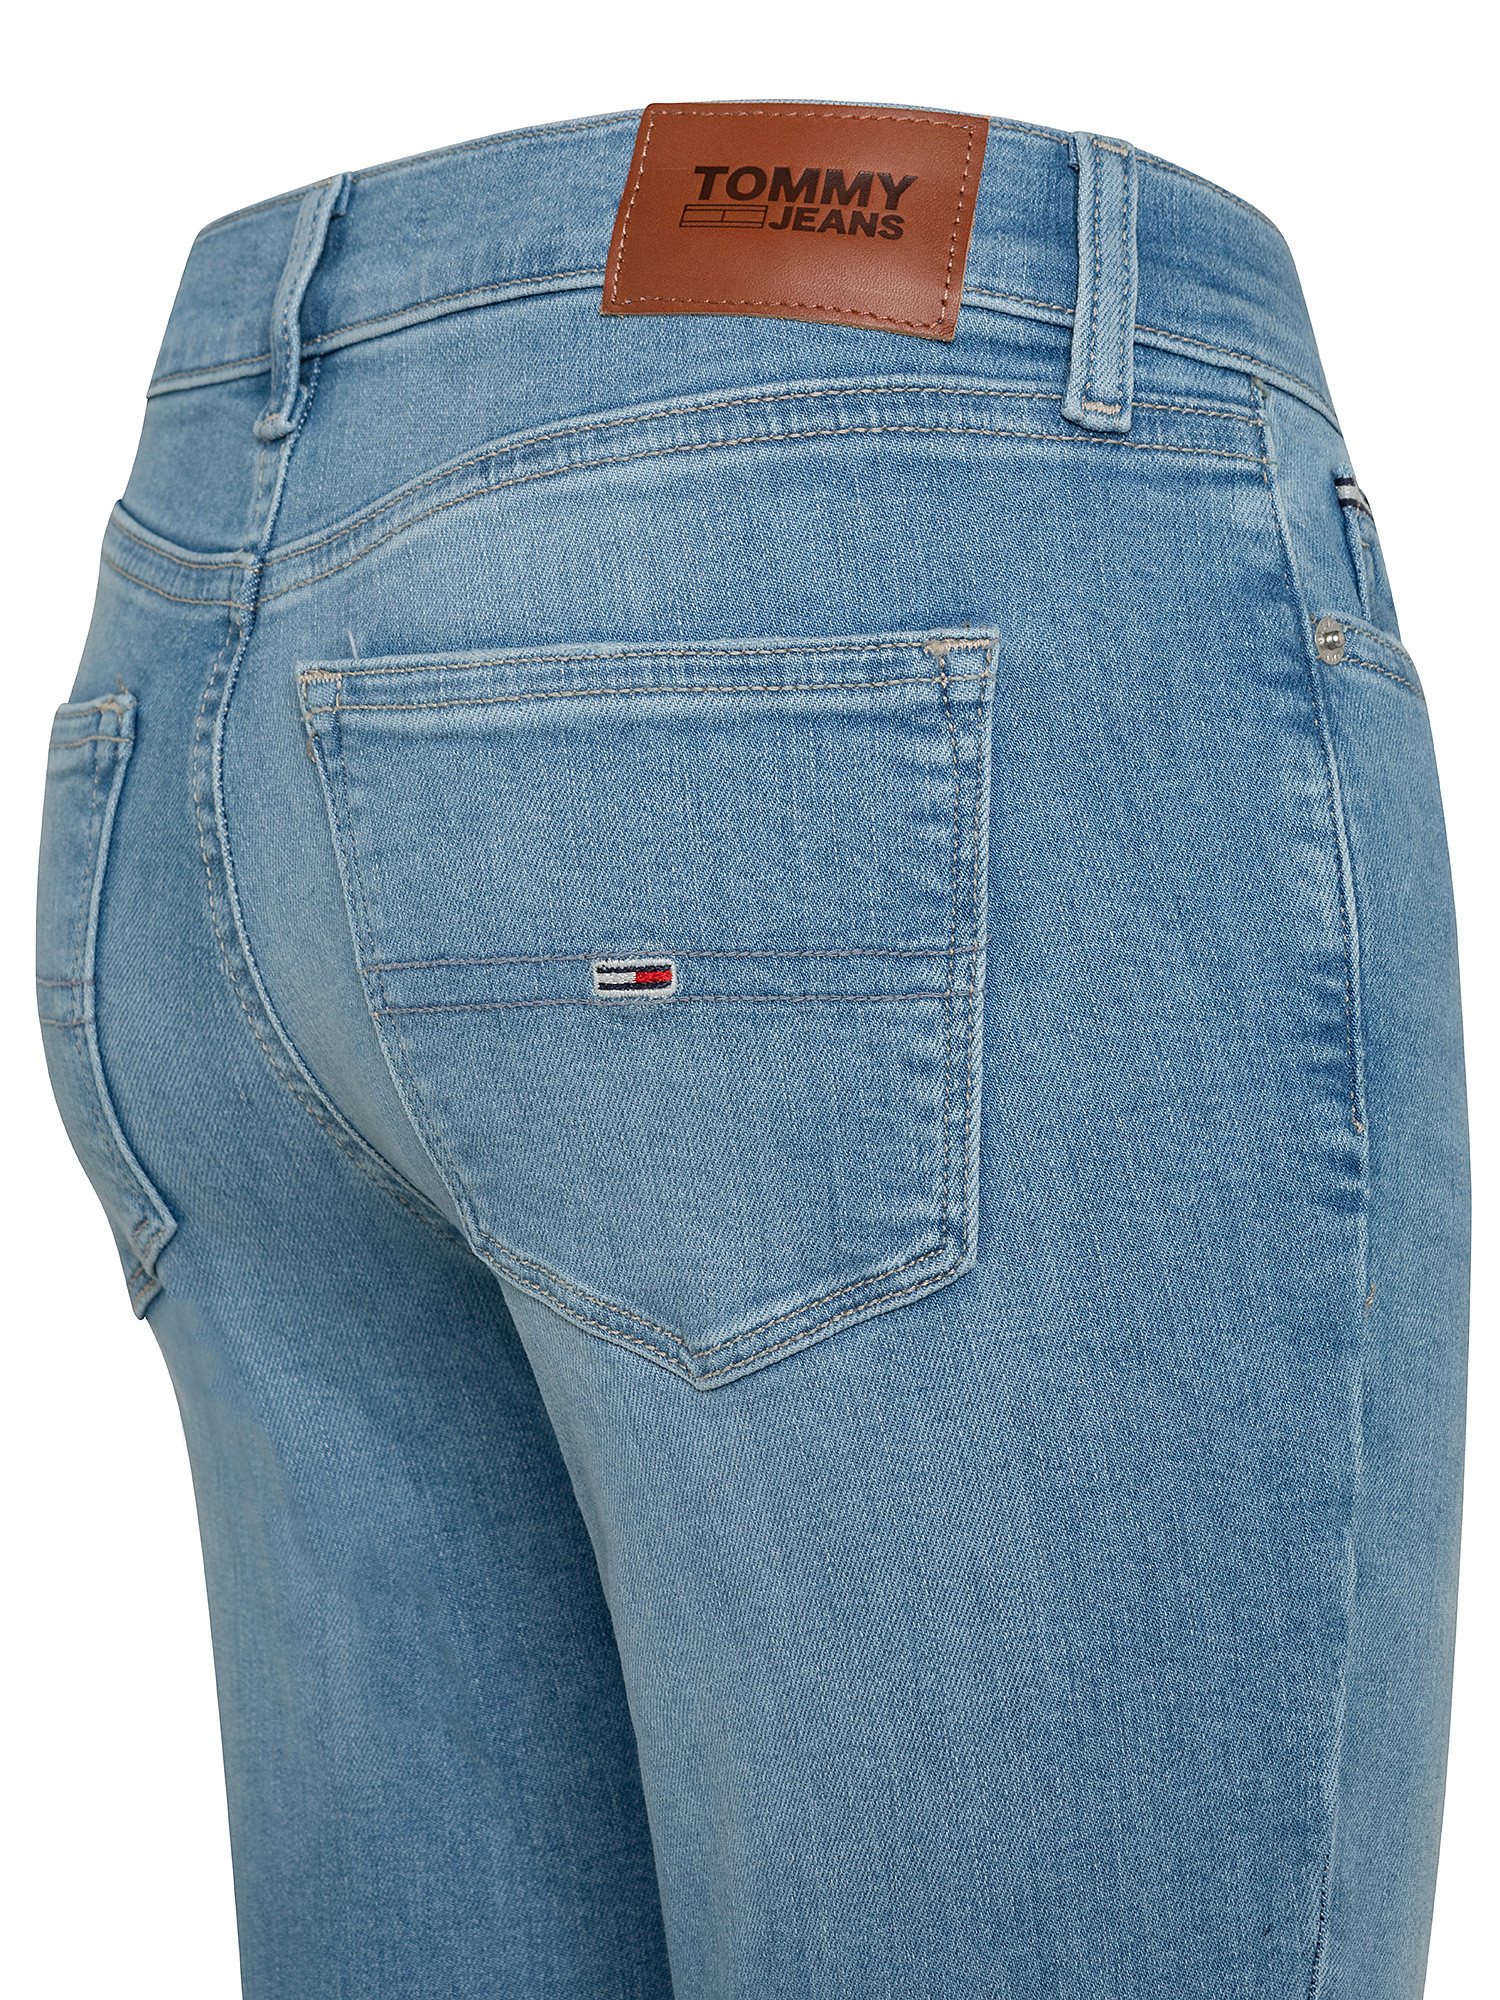 Nora Skinny fit jeans, Denim, large image number 2